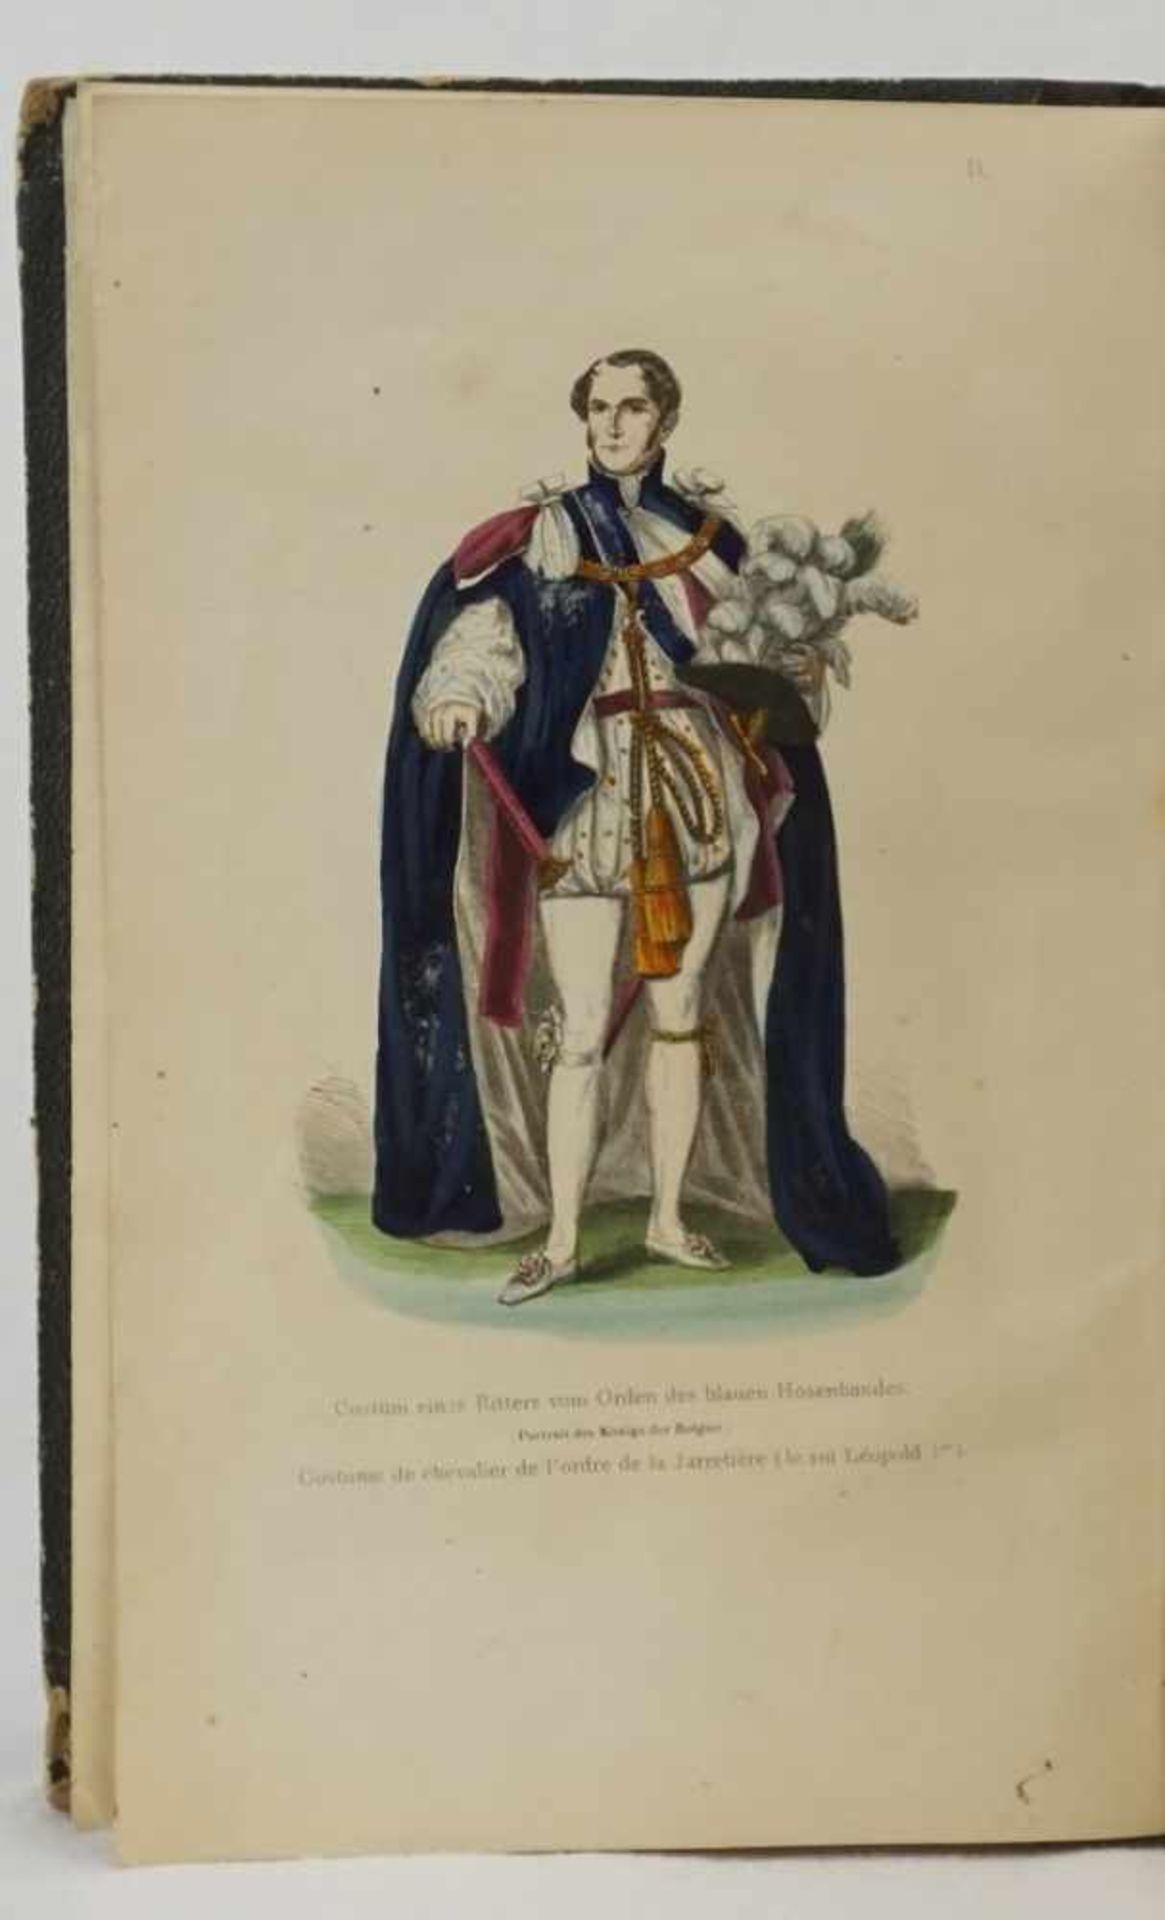 "Das Buch der Ritterorden und Ehrenzeichen"1848, wohl Erstausgabe, Geschichte, Beschreibung und - Image 2 of 5